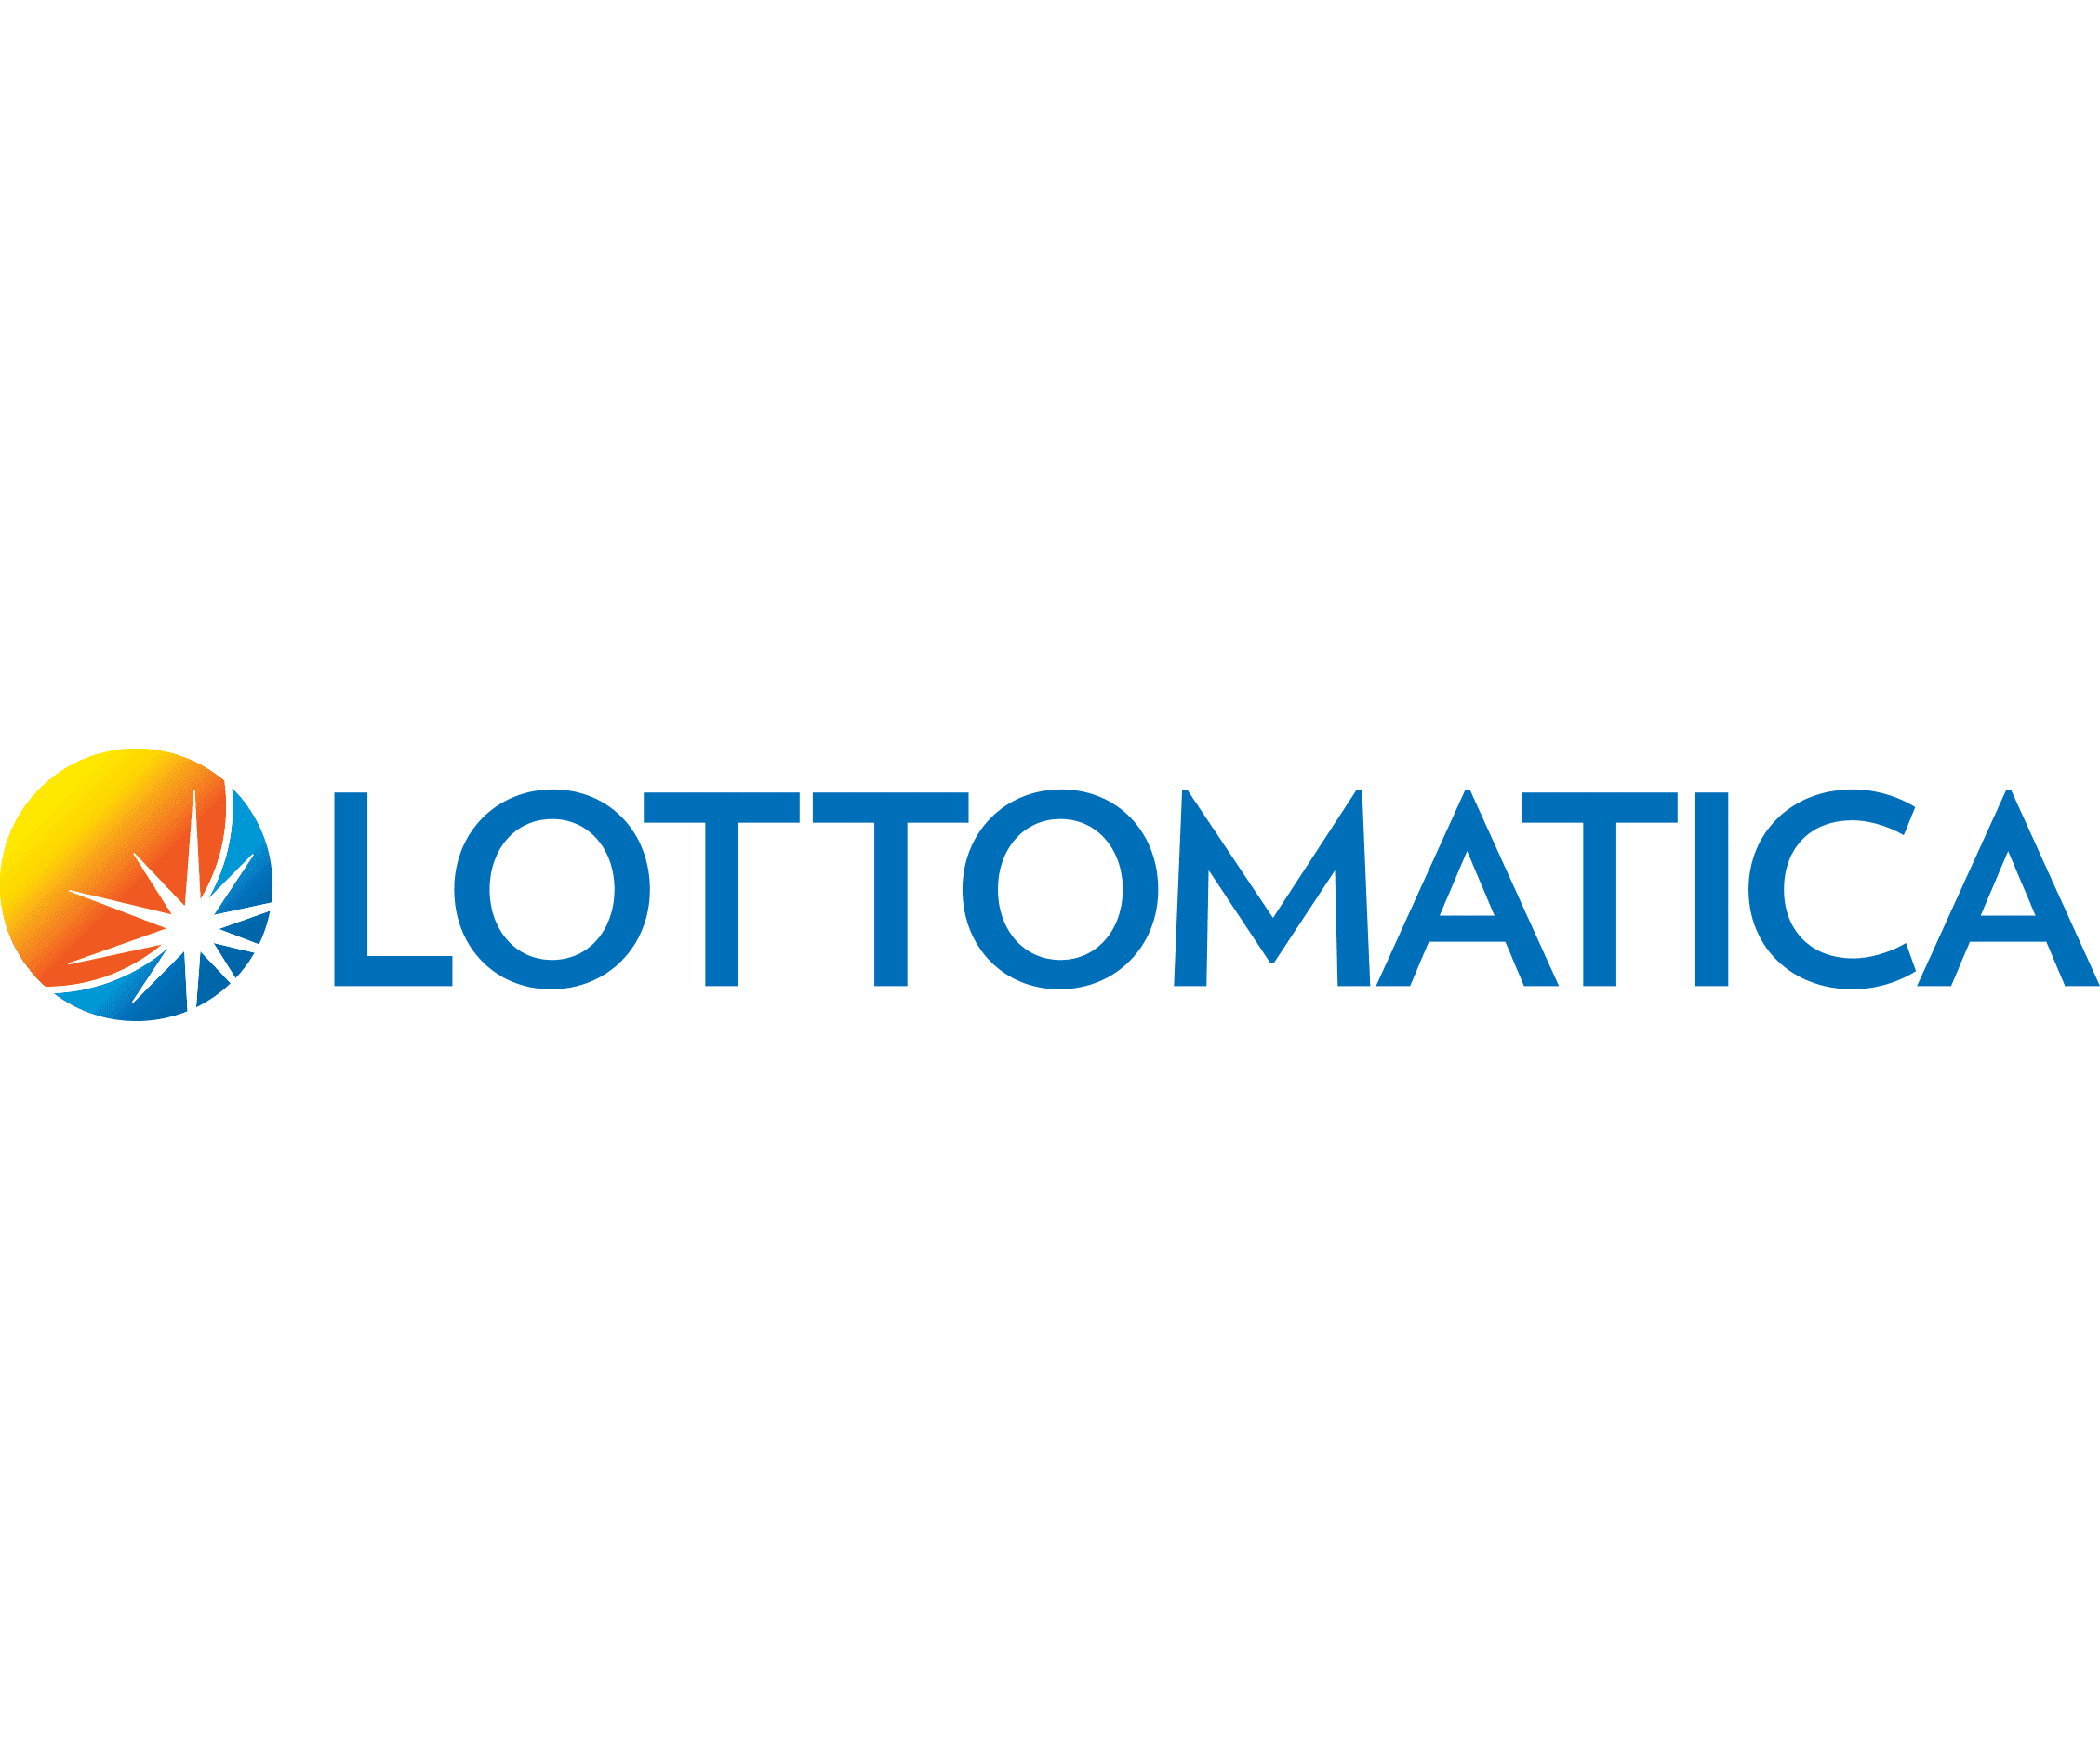 Lottomatica Casino Colombia